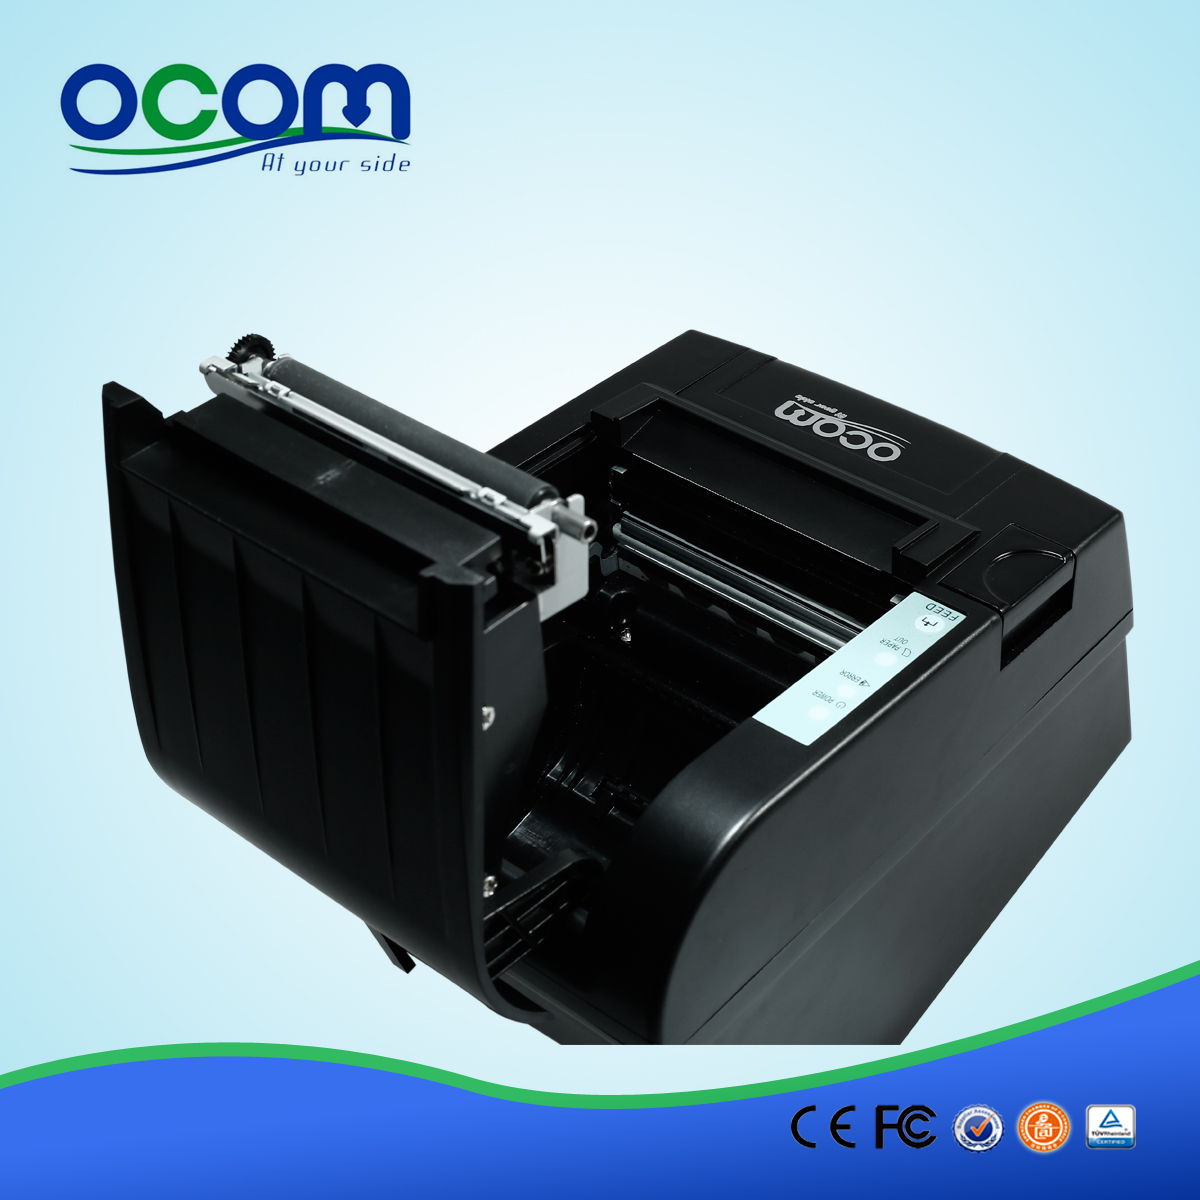 80mm Wifi Imprimante à reçu thermique OCPP-806-W